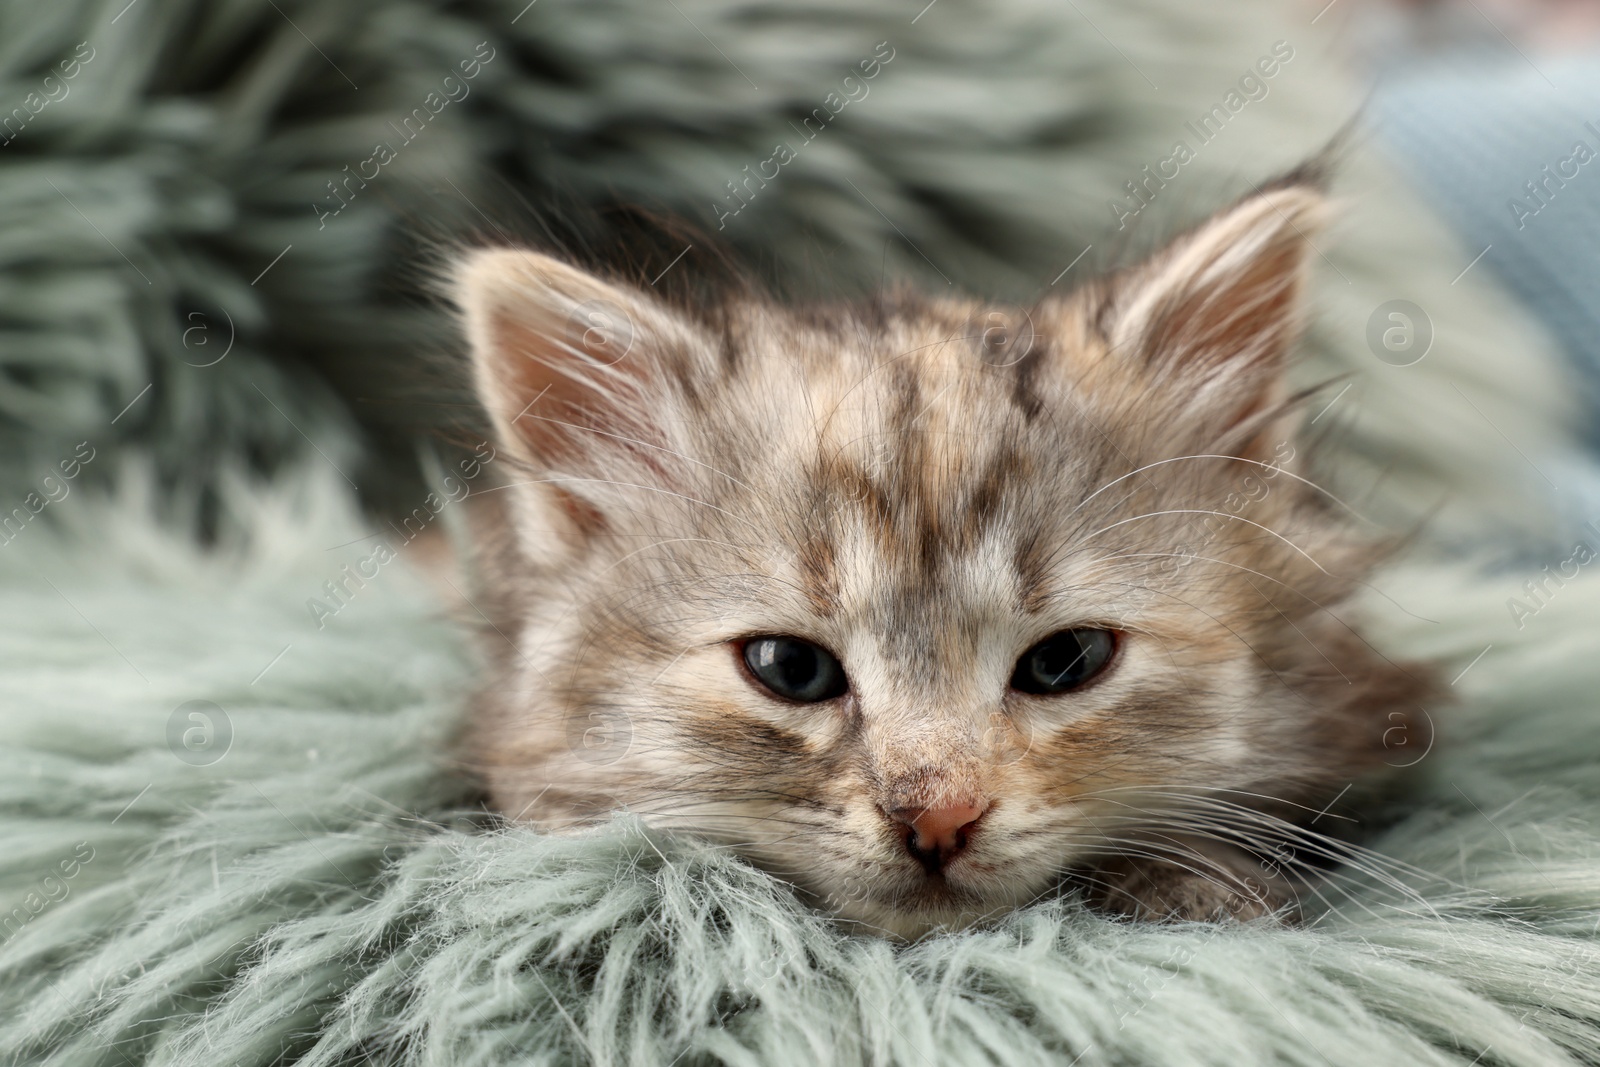 Photo of Cute kitten on fuzzy rug. Baby animal